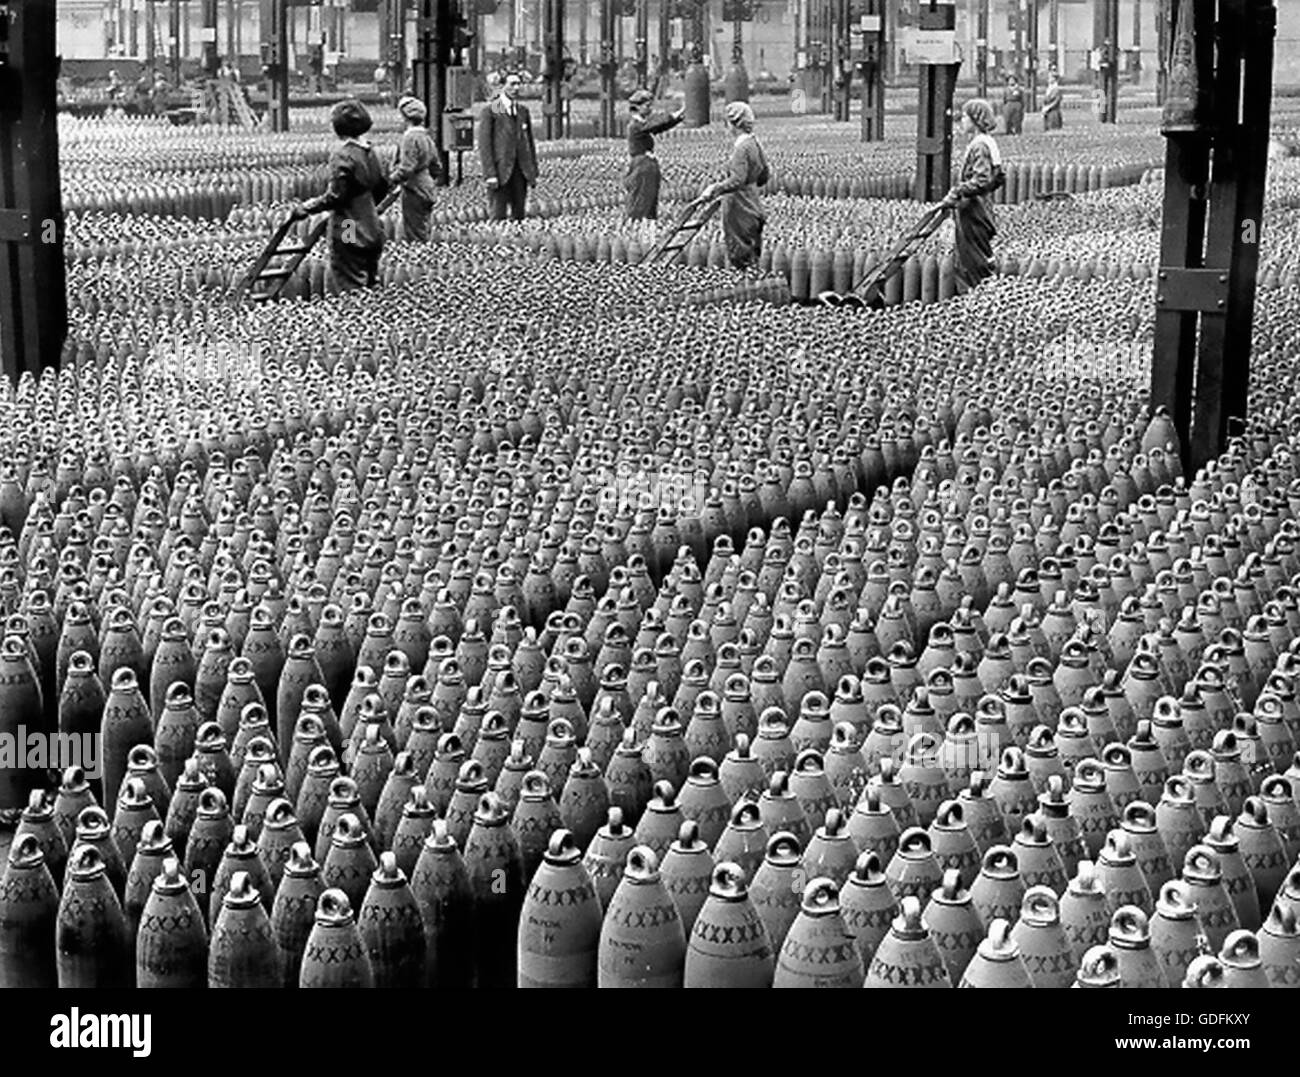 ERSTEN Weltkrieg die nationalen Füllungen-Fabrik in Chilwell, Nottingham, England im Jahre 1917. Die Frauen bewegen 6-Zoll-Haubitze Muscheln in einem der Lager. Offizielle Kriegsministerium Foto von Horace Nicholls. Stockfoto